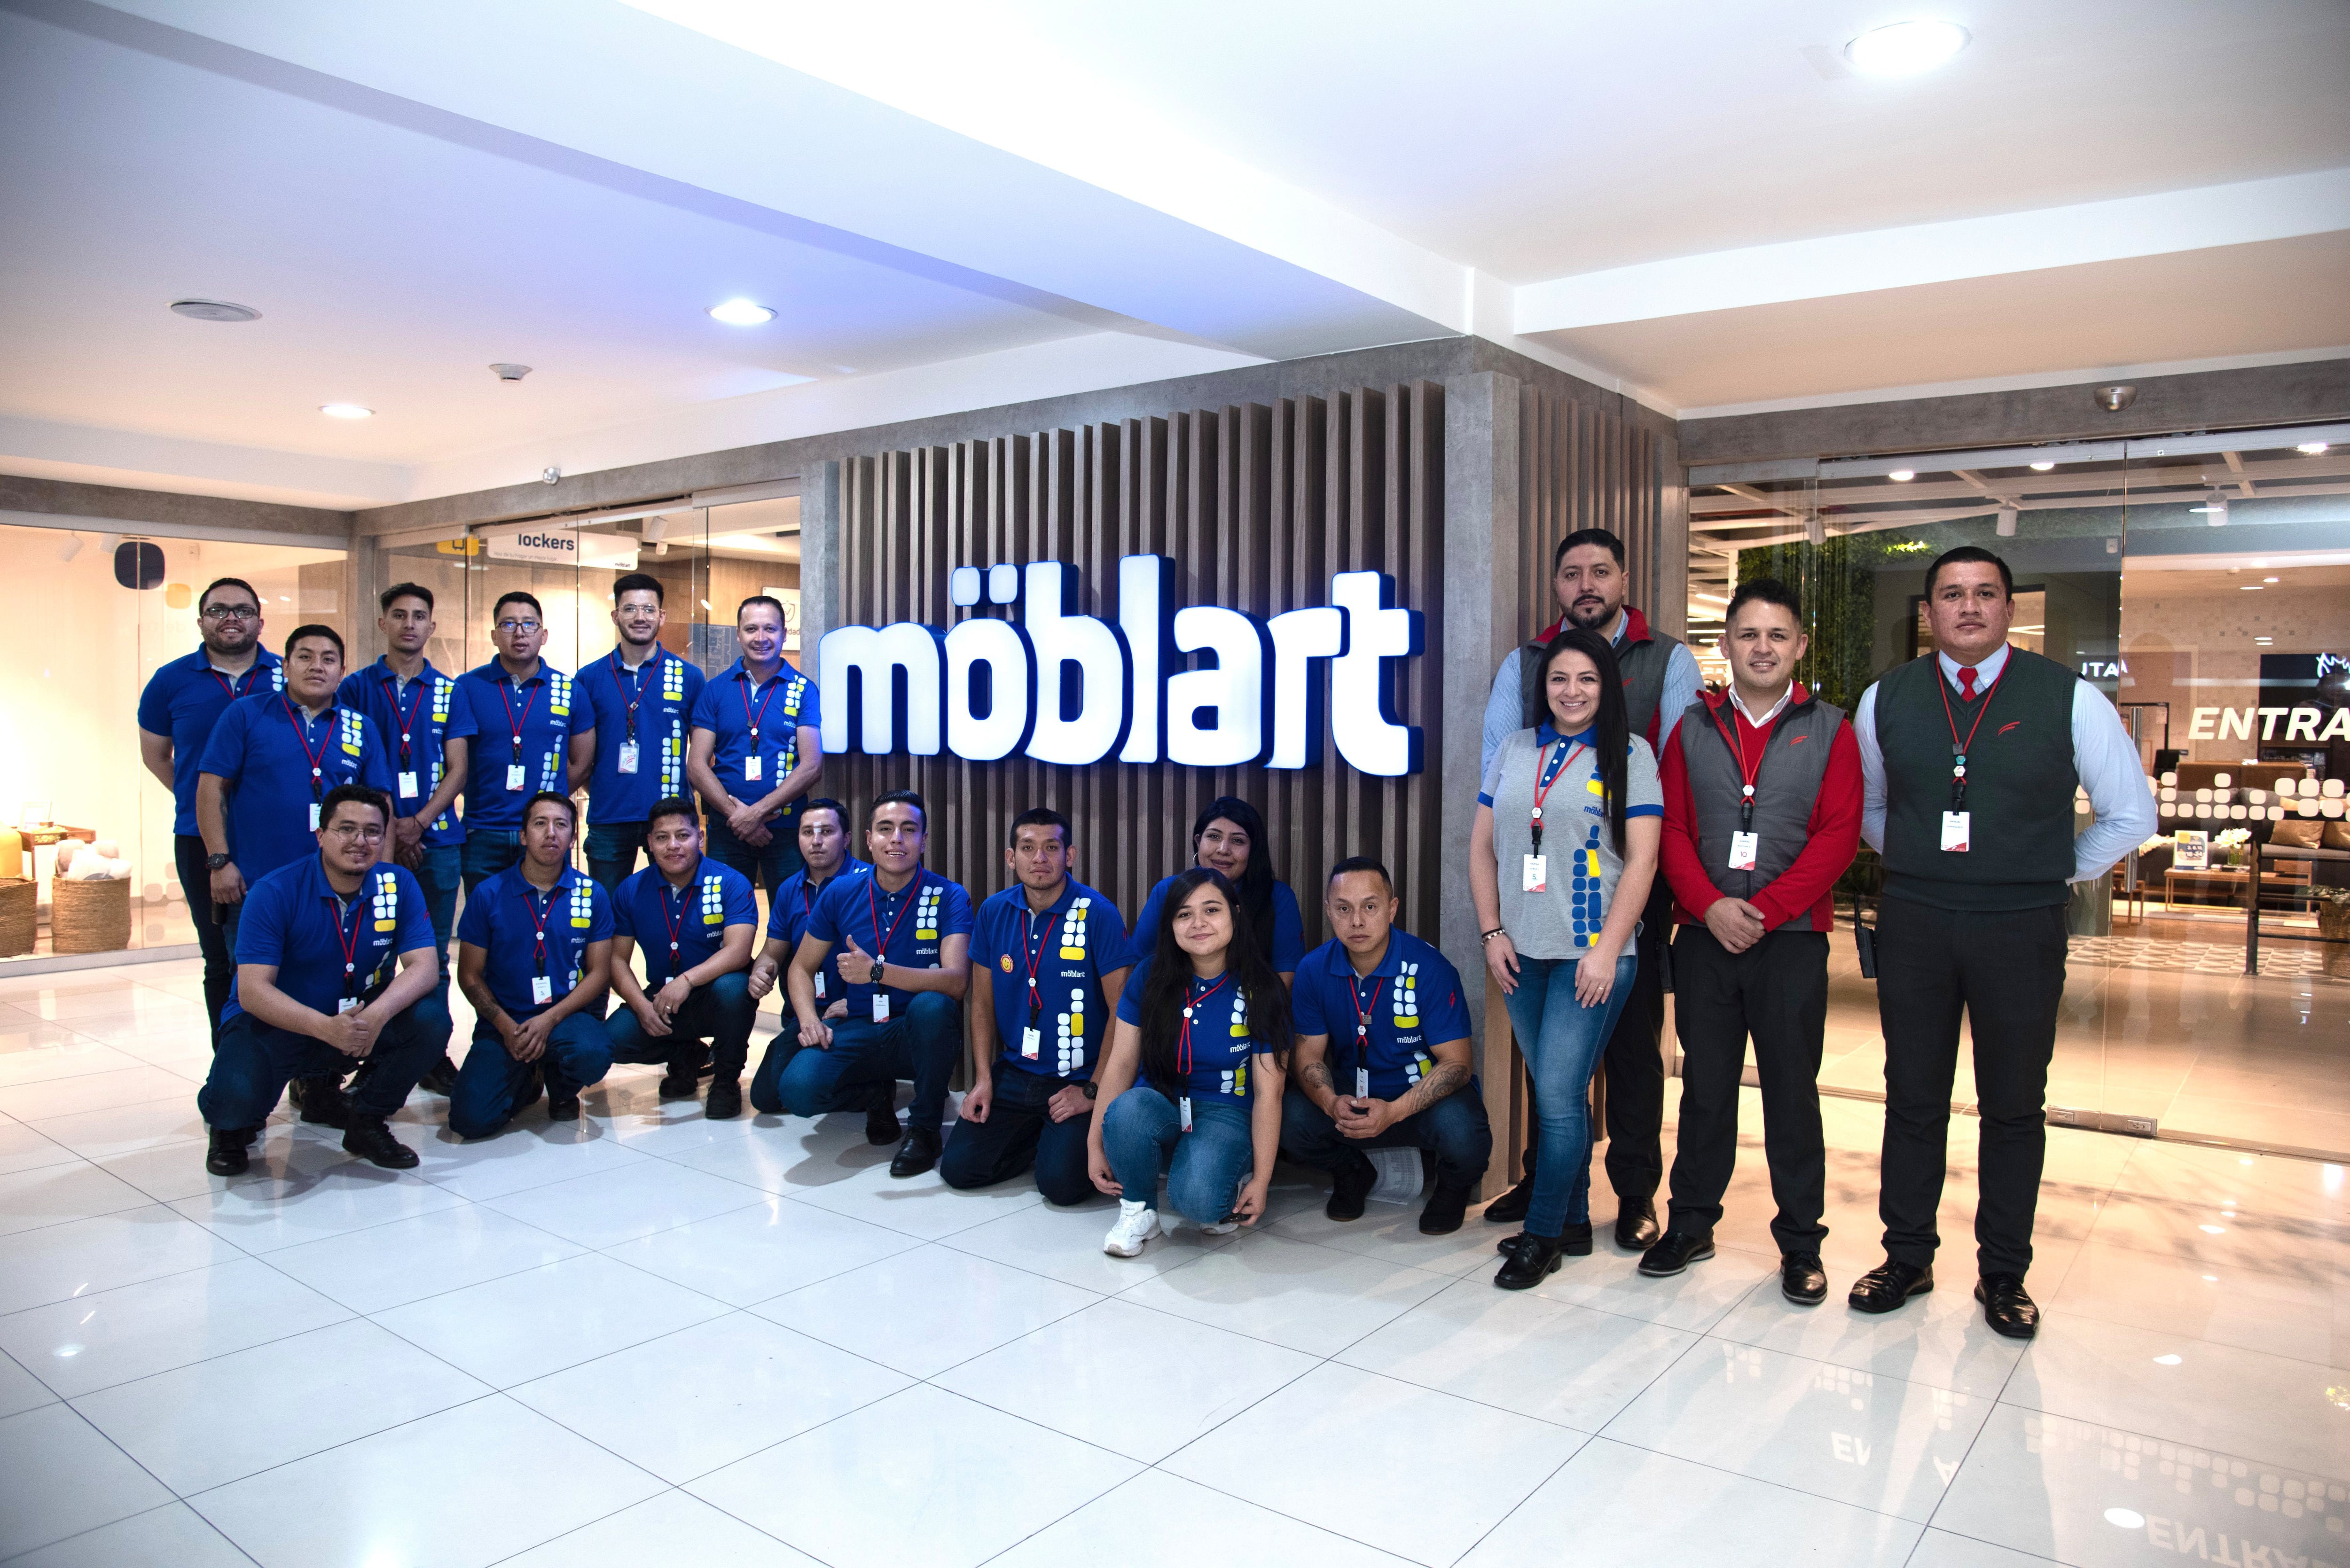 Möblart, de Corporación Favorita, abrió su segunda tienda en Quito. 